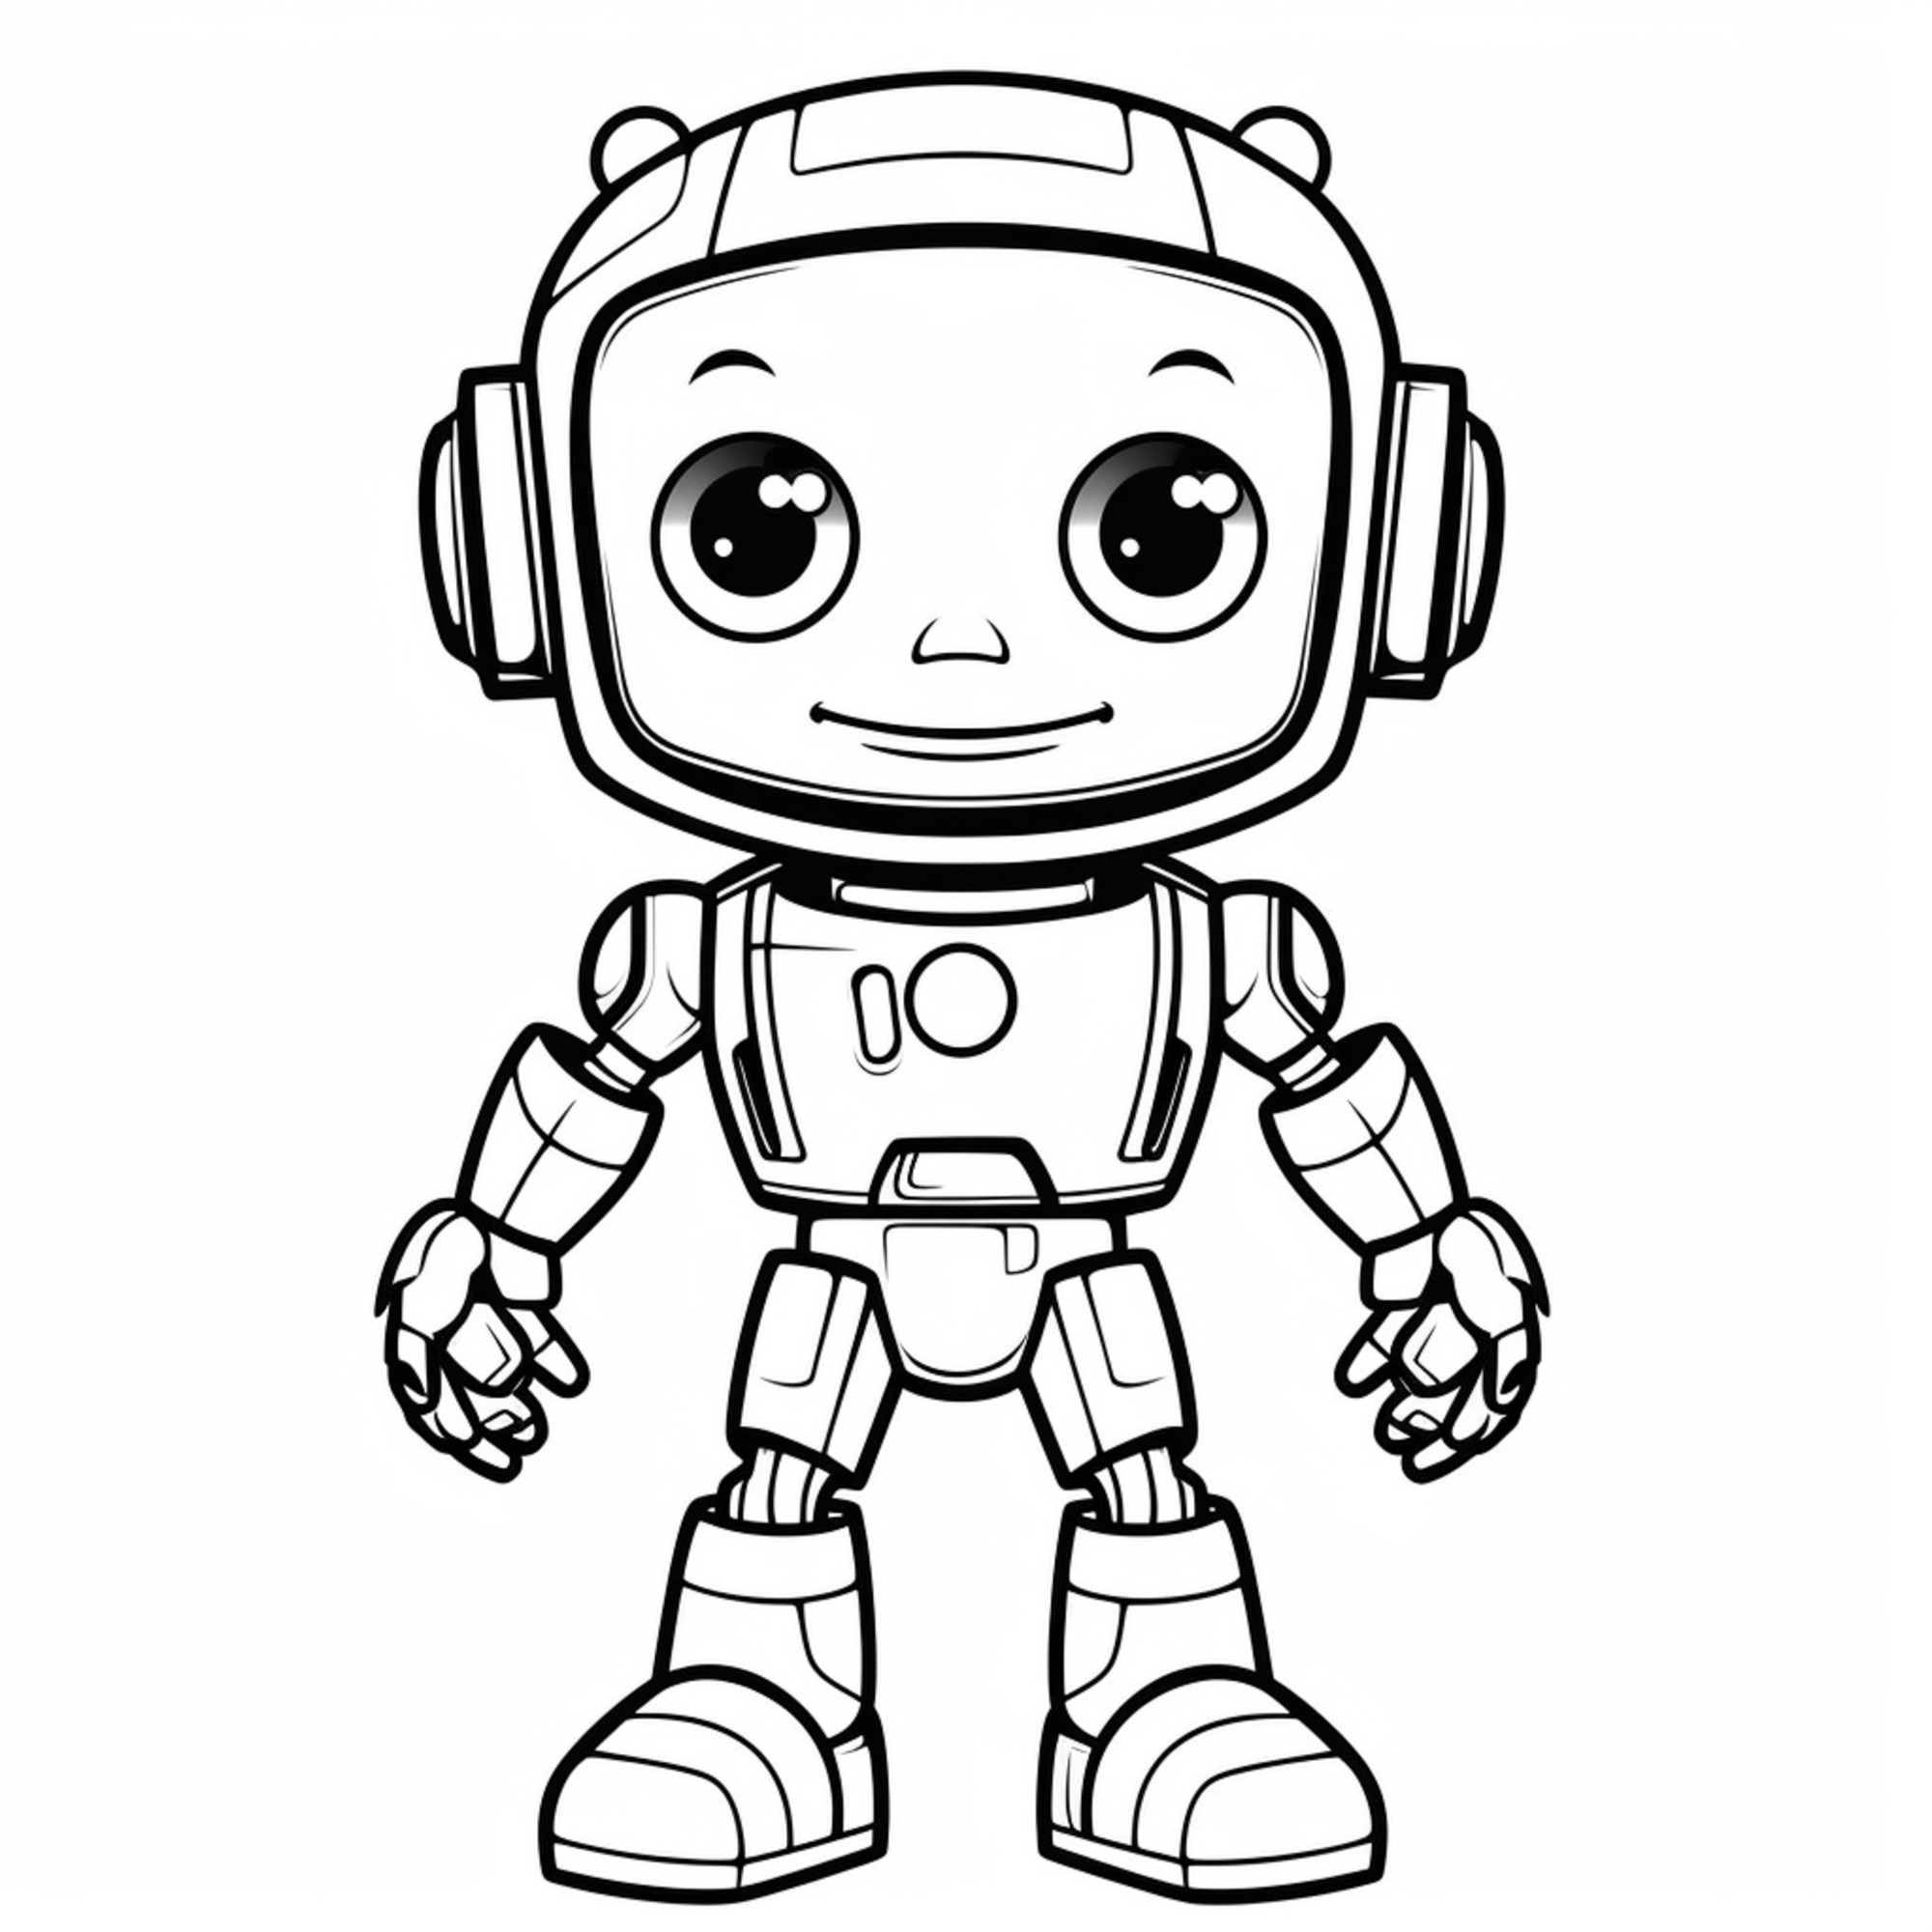 Раскраска для детей: робот с наушниками и шлемом